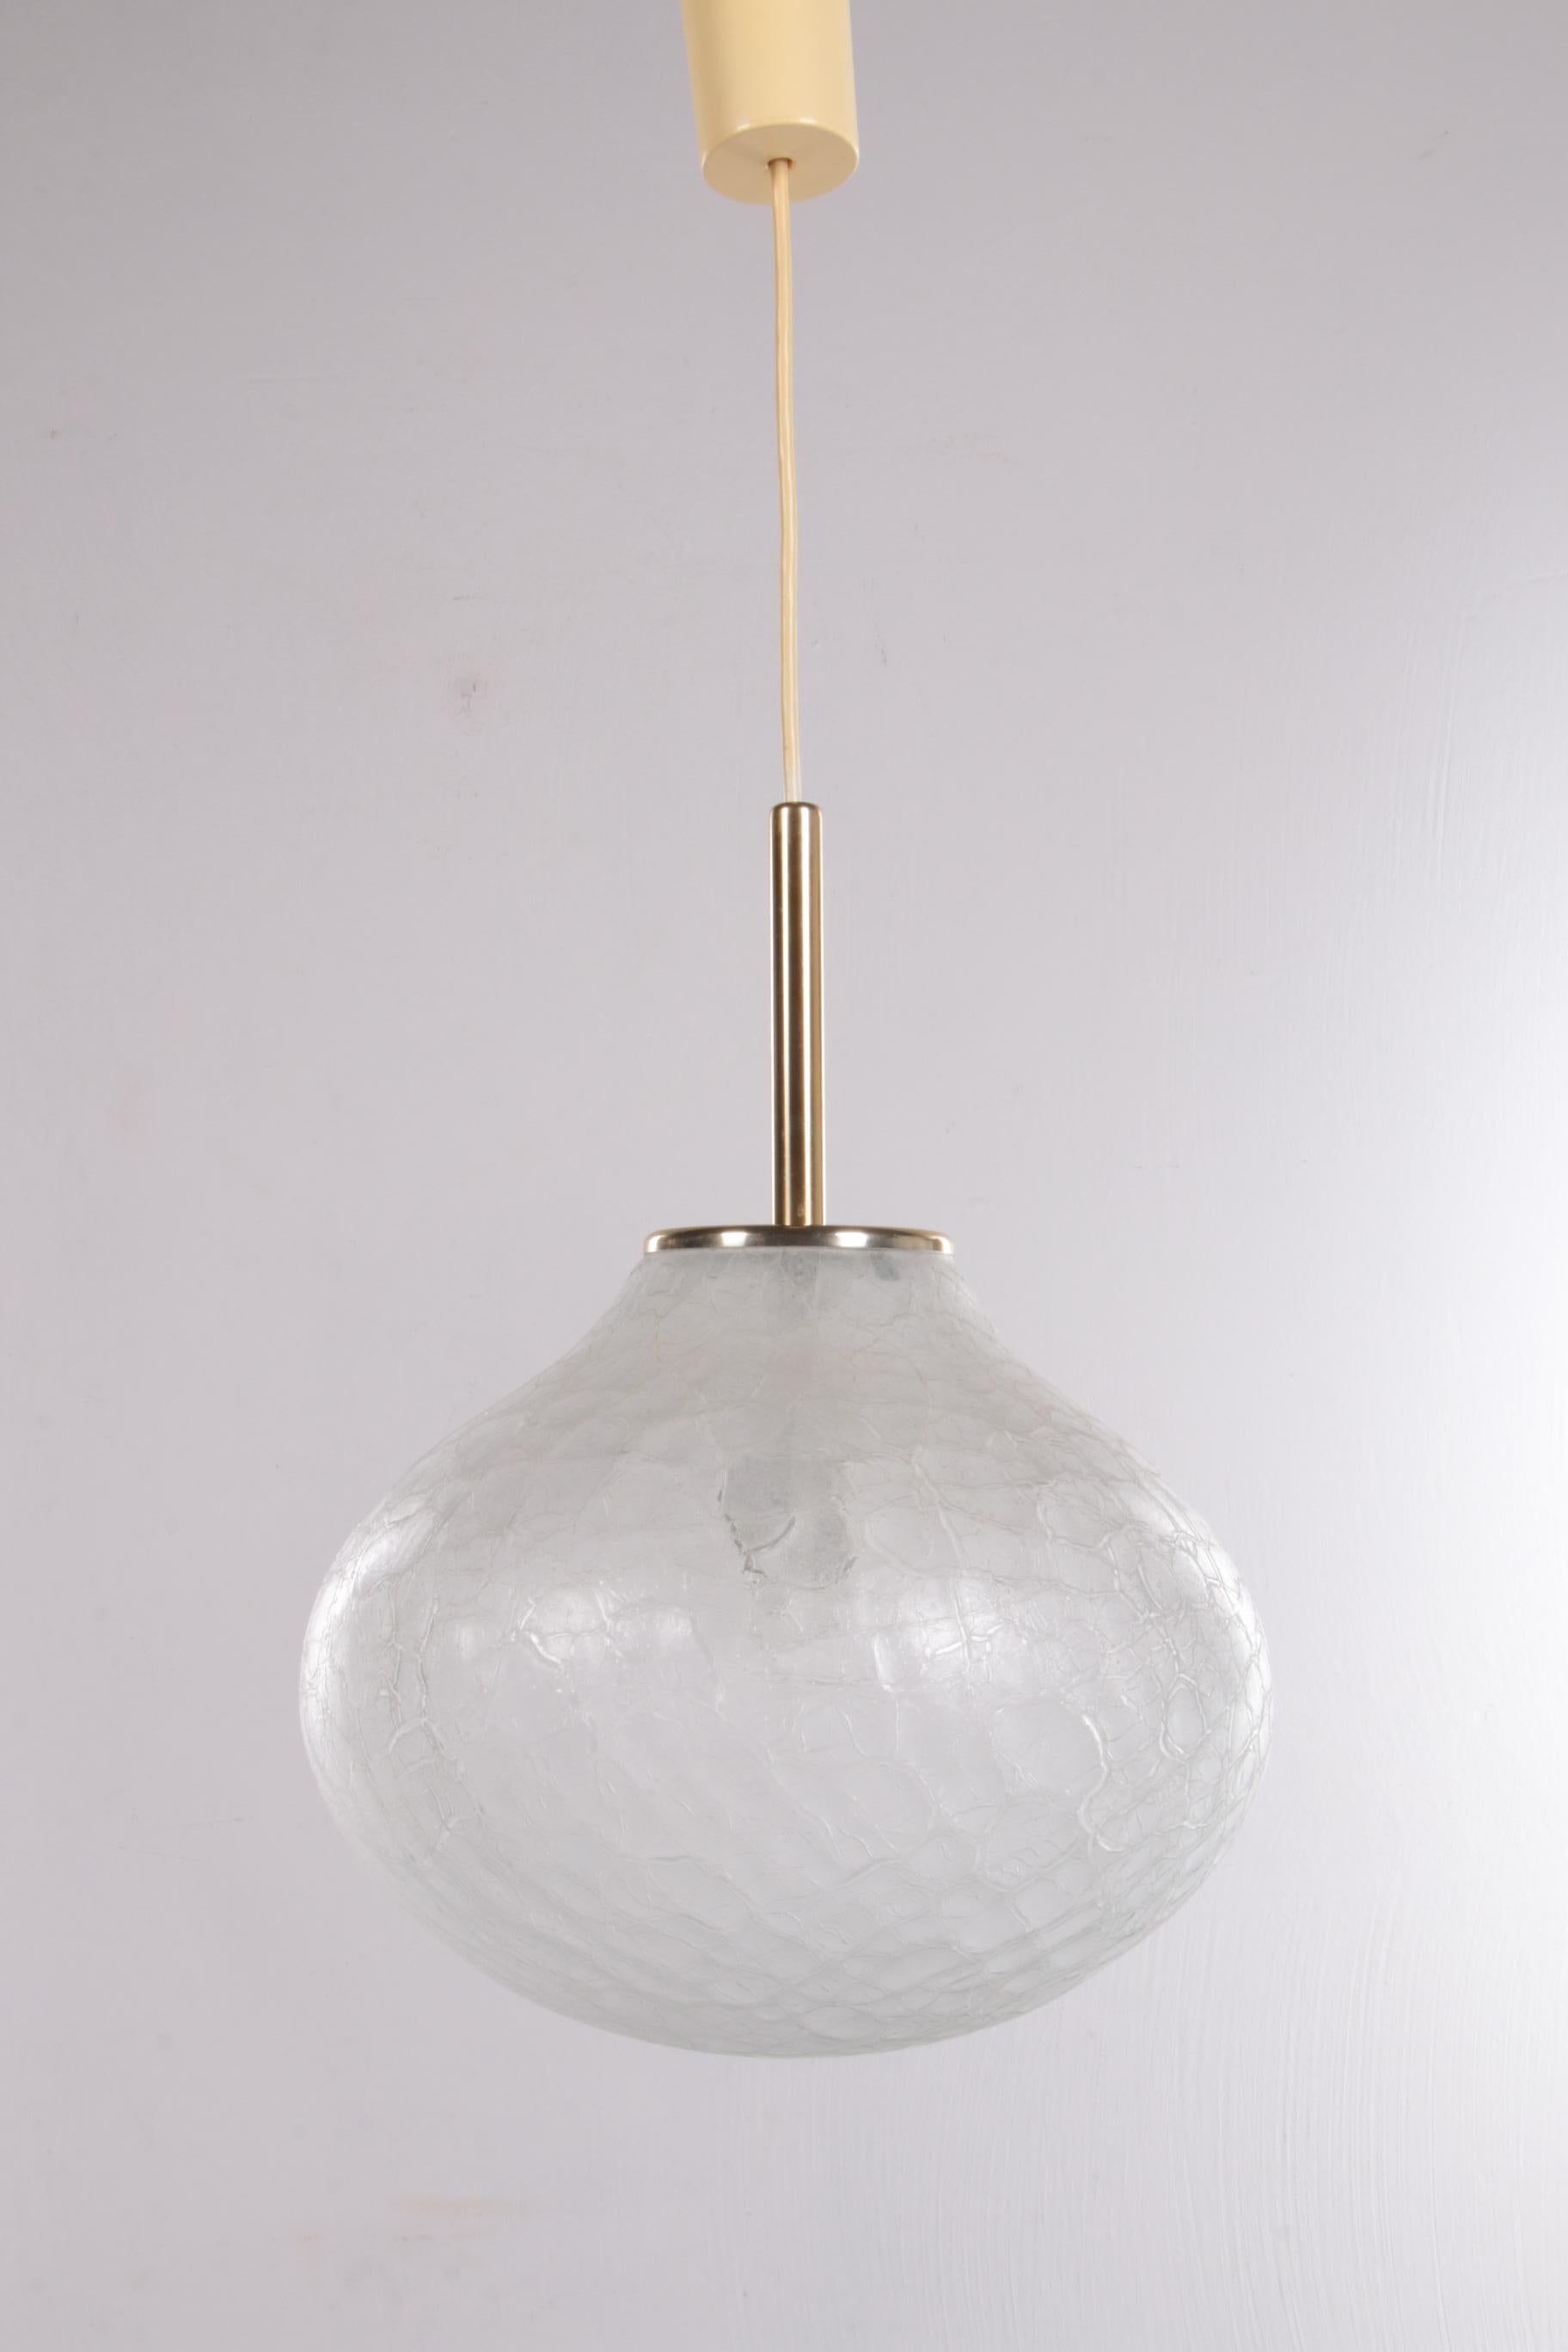 Très rare lampe à suspension en verre de Doria Leuchten, 1960, Allemagne


Il s'agit d'une magnifique et rare lampe suspendue de Doria Leuchten. Cette lampe provient d'Allemagne et a été fabriquée dans les années 1960. La lampe est fabriquée en